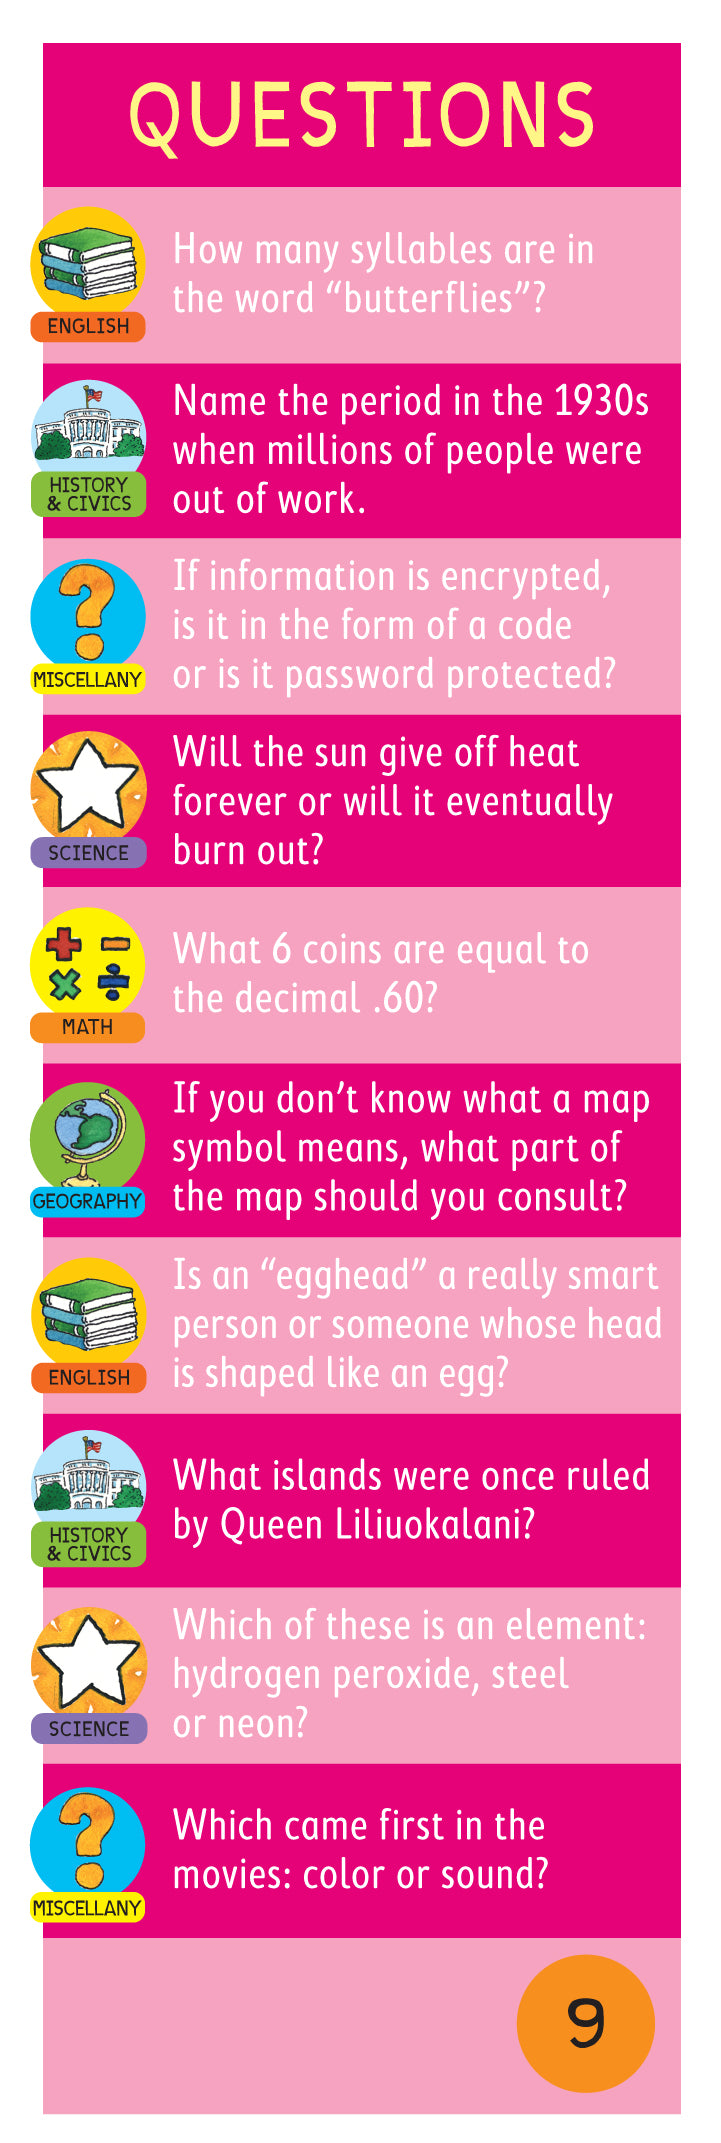 Brain Quest 5th Grade Q&A Cards